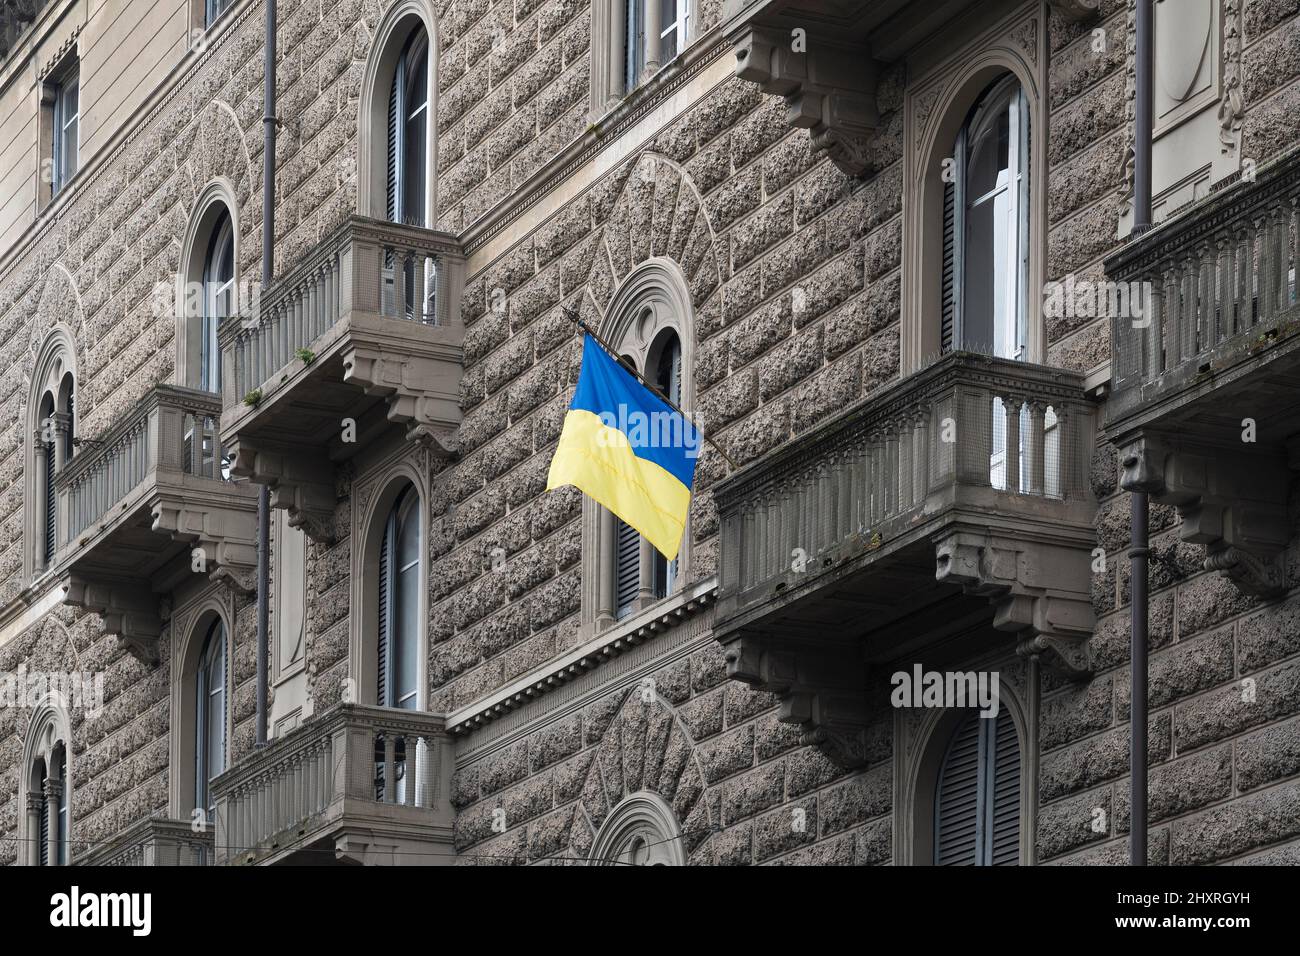 La bandera de Ucrania revoloteaba en el balcón de un edificio de época Foto de stock